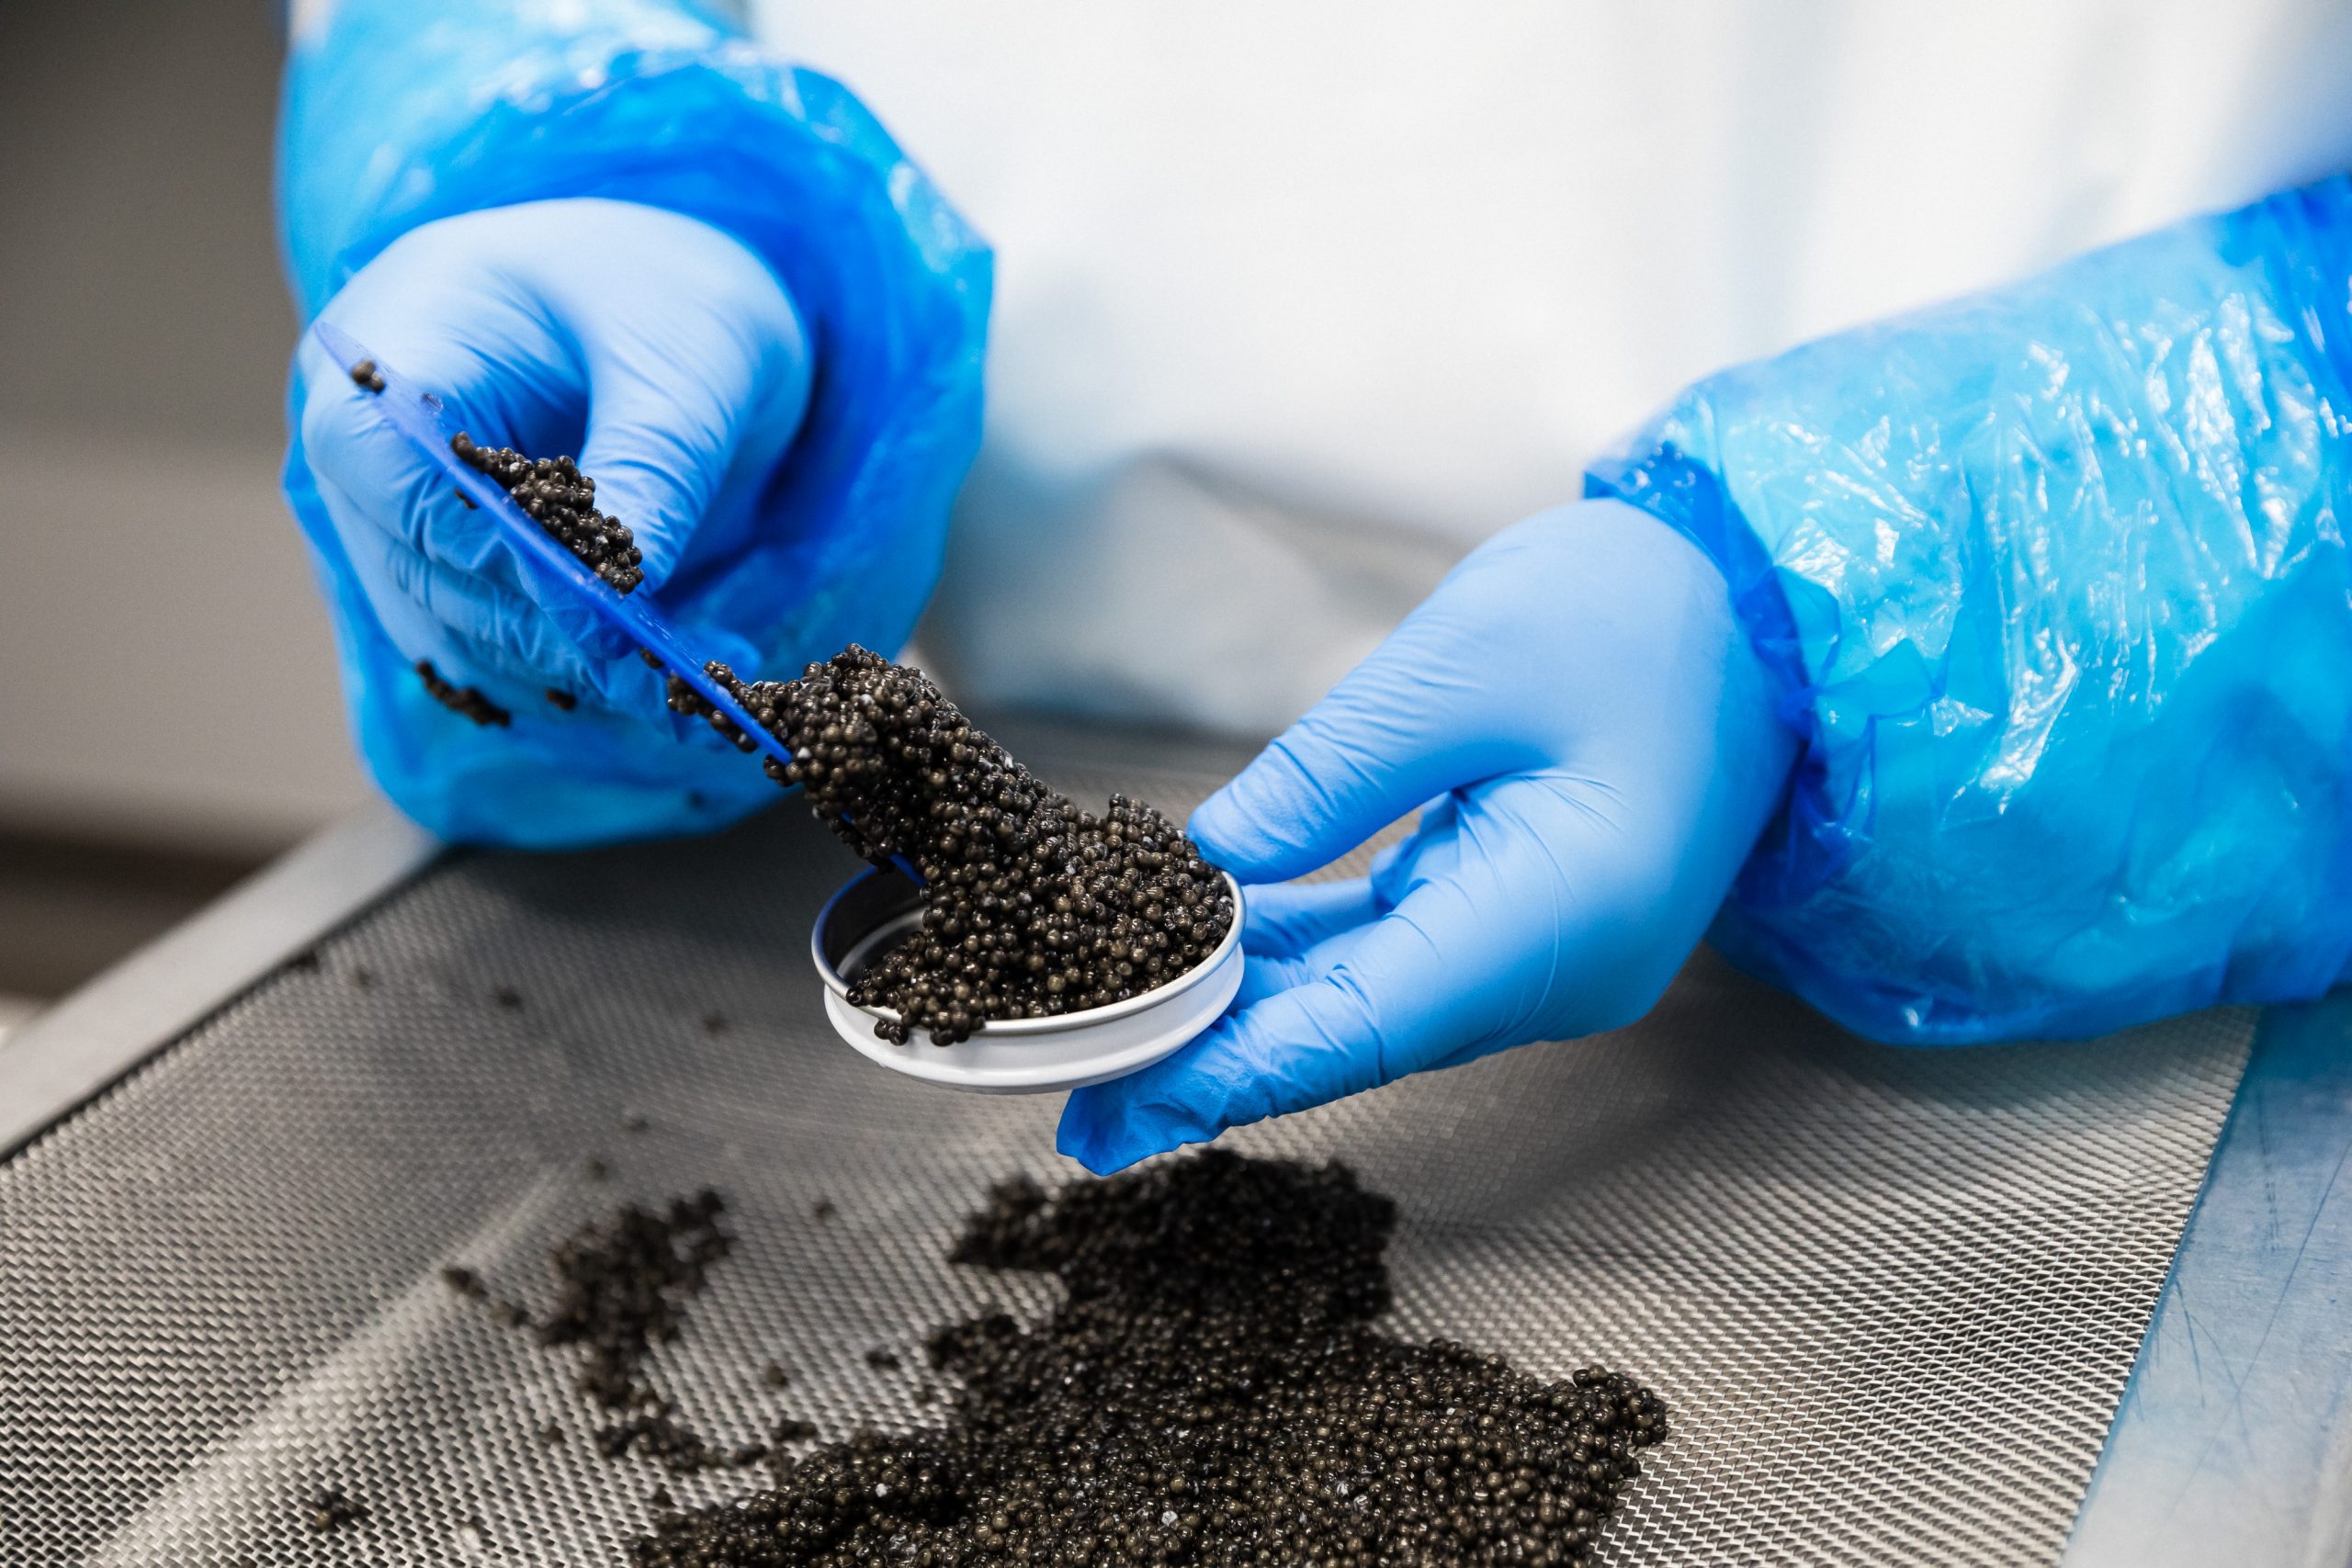 Le travail de préparation du caviar est un travail minutieux. Le produit doit être manipulé avec la plus grande prudence. Ce travail se fait sur place, au sein des laboratoires de Caviar de Neuvic.